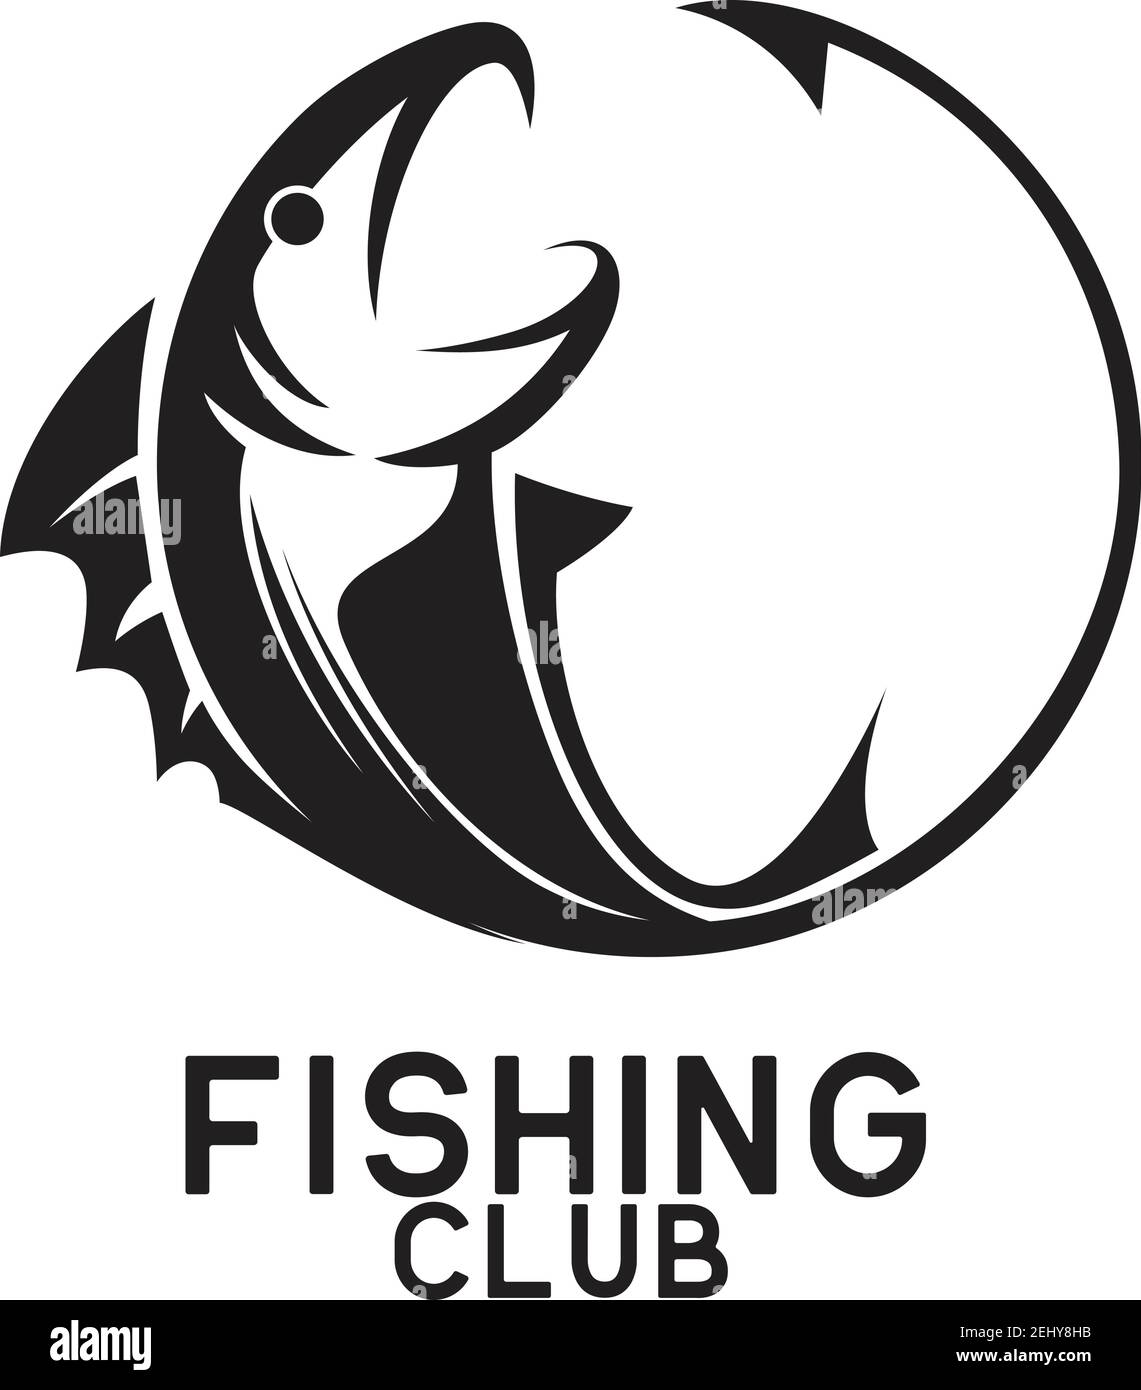 fishing logo on white background, vector illustration Stock Vector